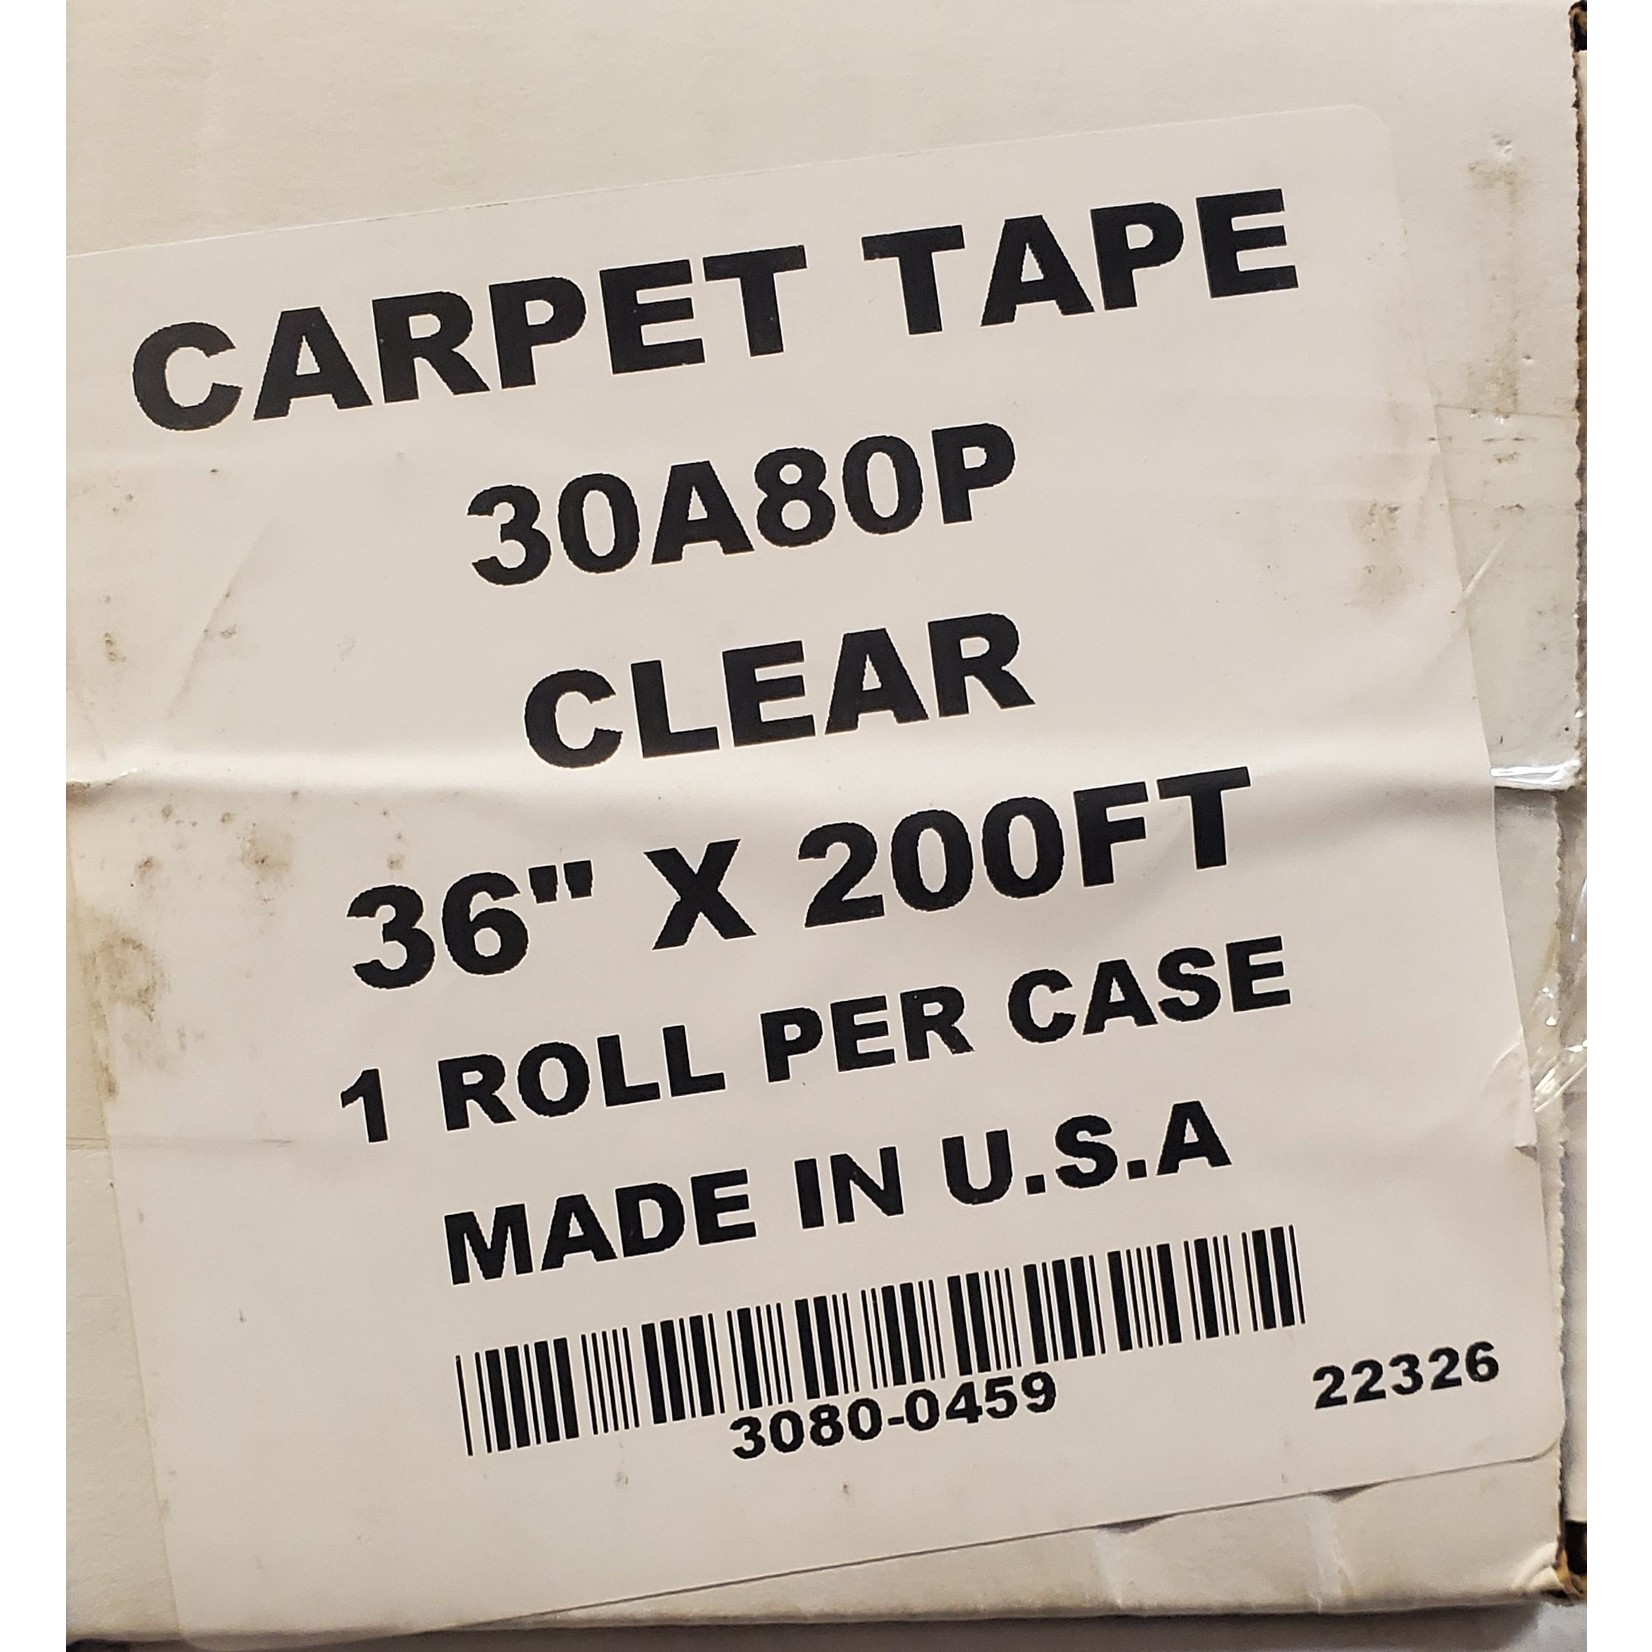 Presto Tape 30A80P 36" x 200' Carpet Tape/Film Premium